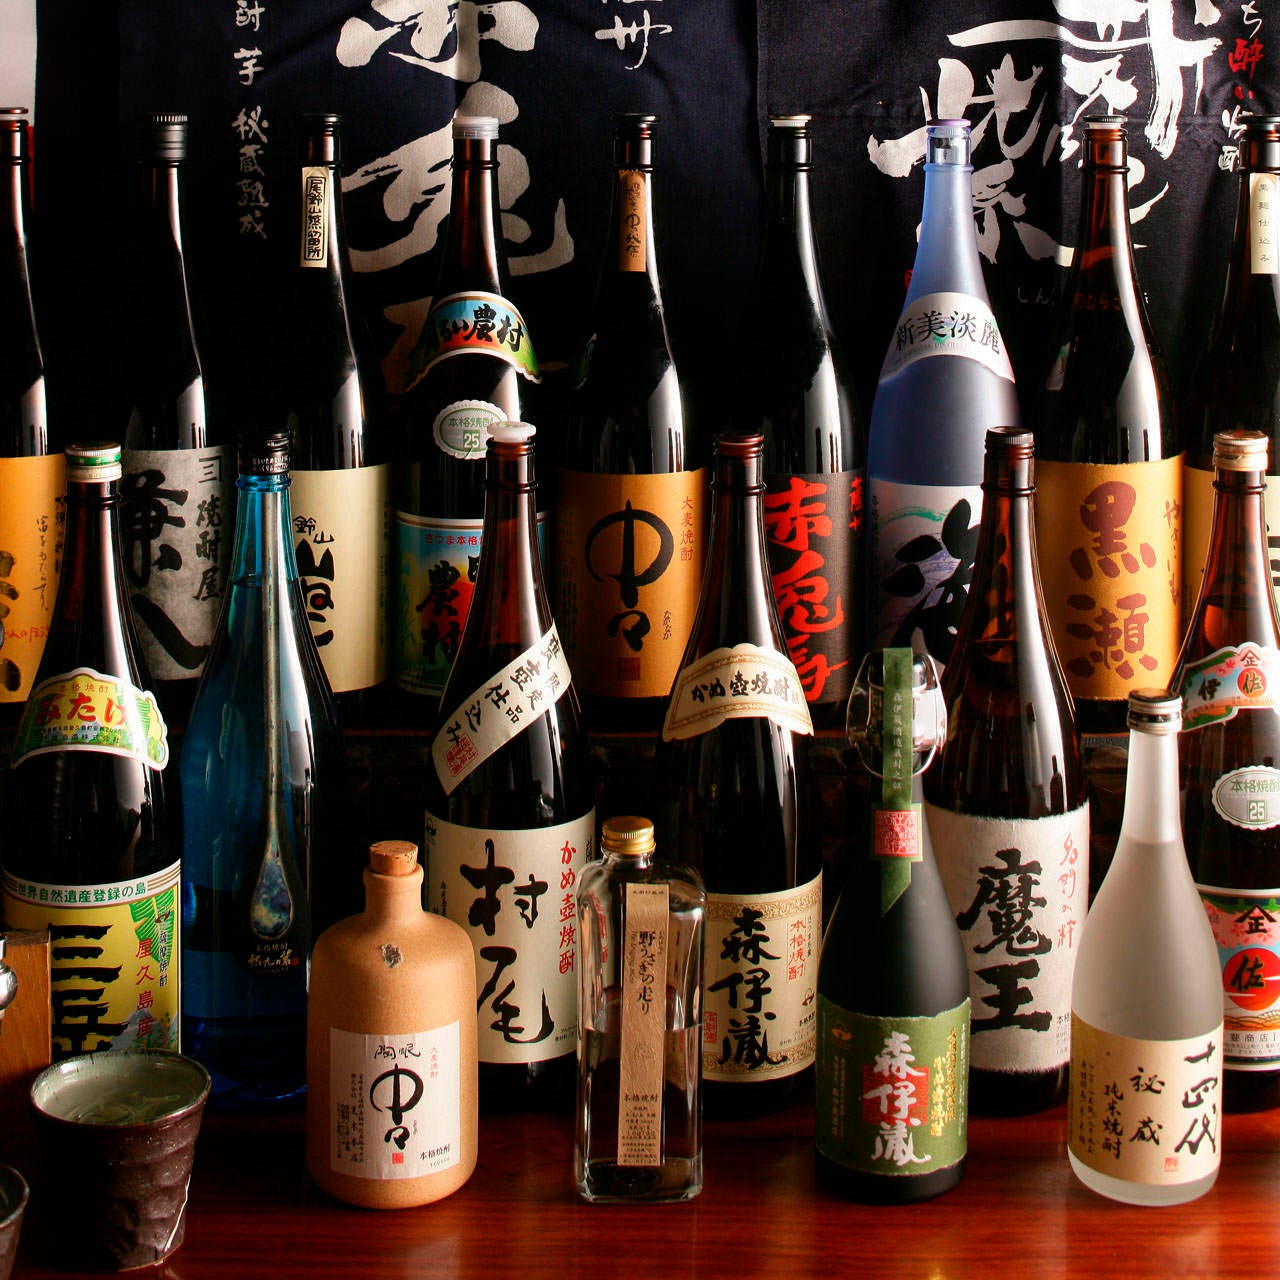 日本各地の名産銘柄焼酎、地酒を集めた豊富なお酒の数々。